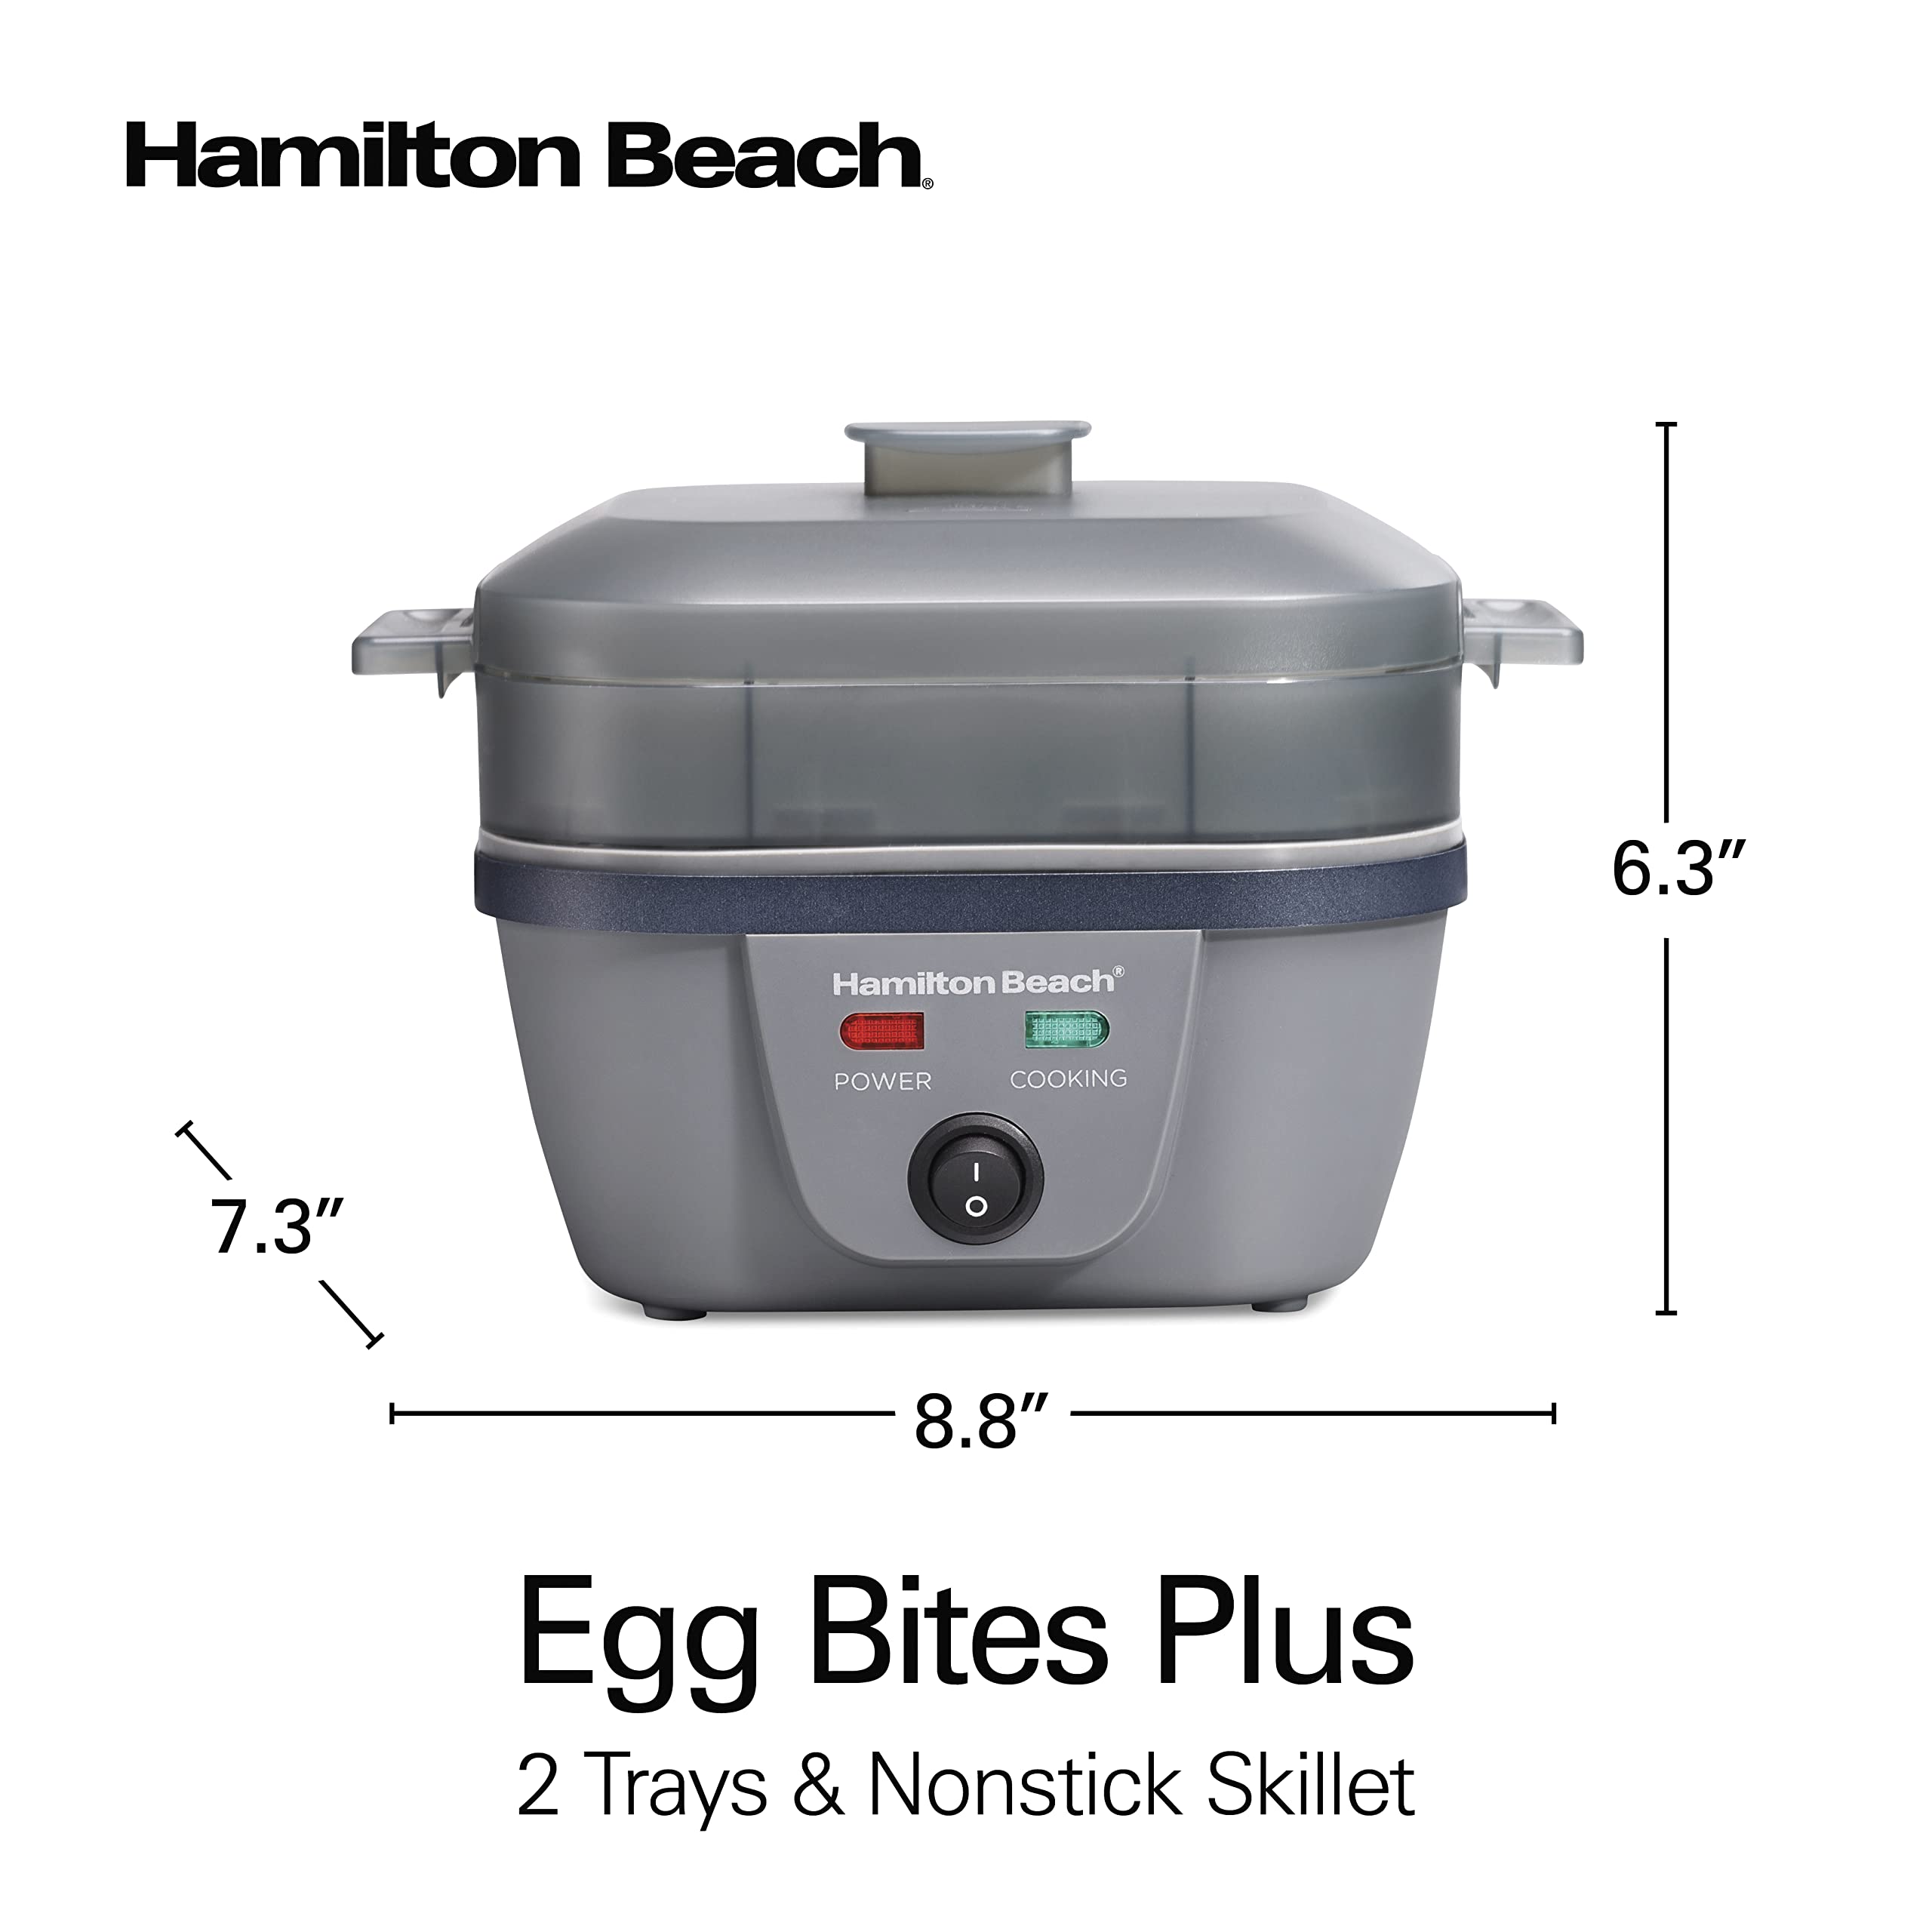 Hamilton Beach 6-in-1 Electric Egg Cooker for Hard Boiled Eggs, Sous Vide Style Egg Bite Maker and Poacher, 5.25” Non-Stick Skillet for Omelets, Scrambling & Frying, Grey (25510)